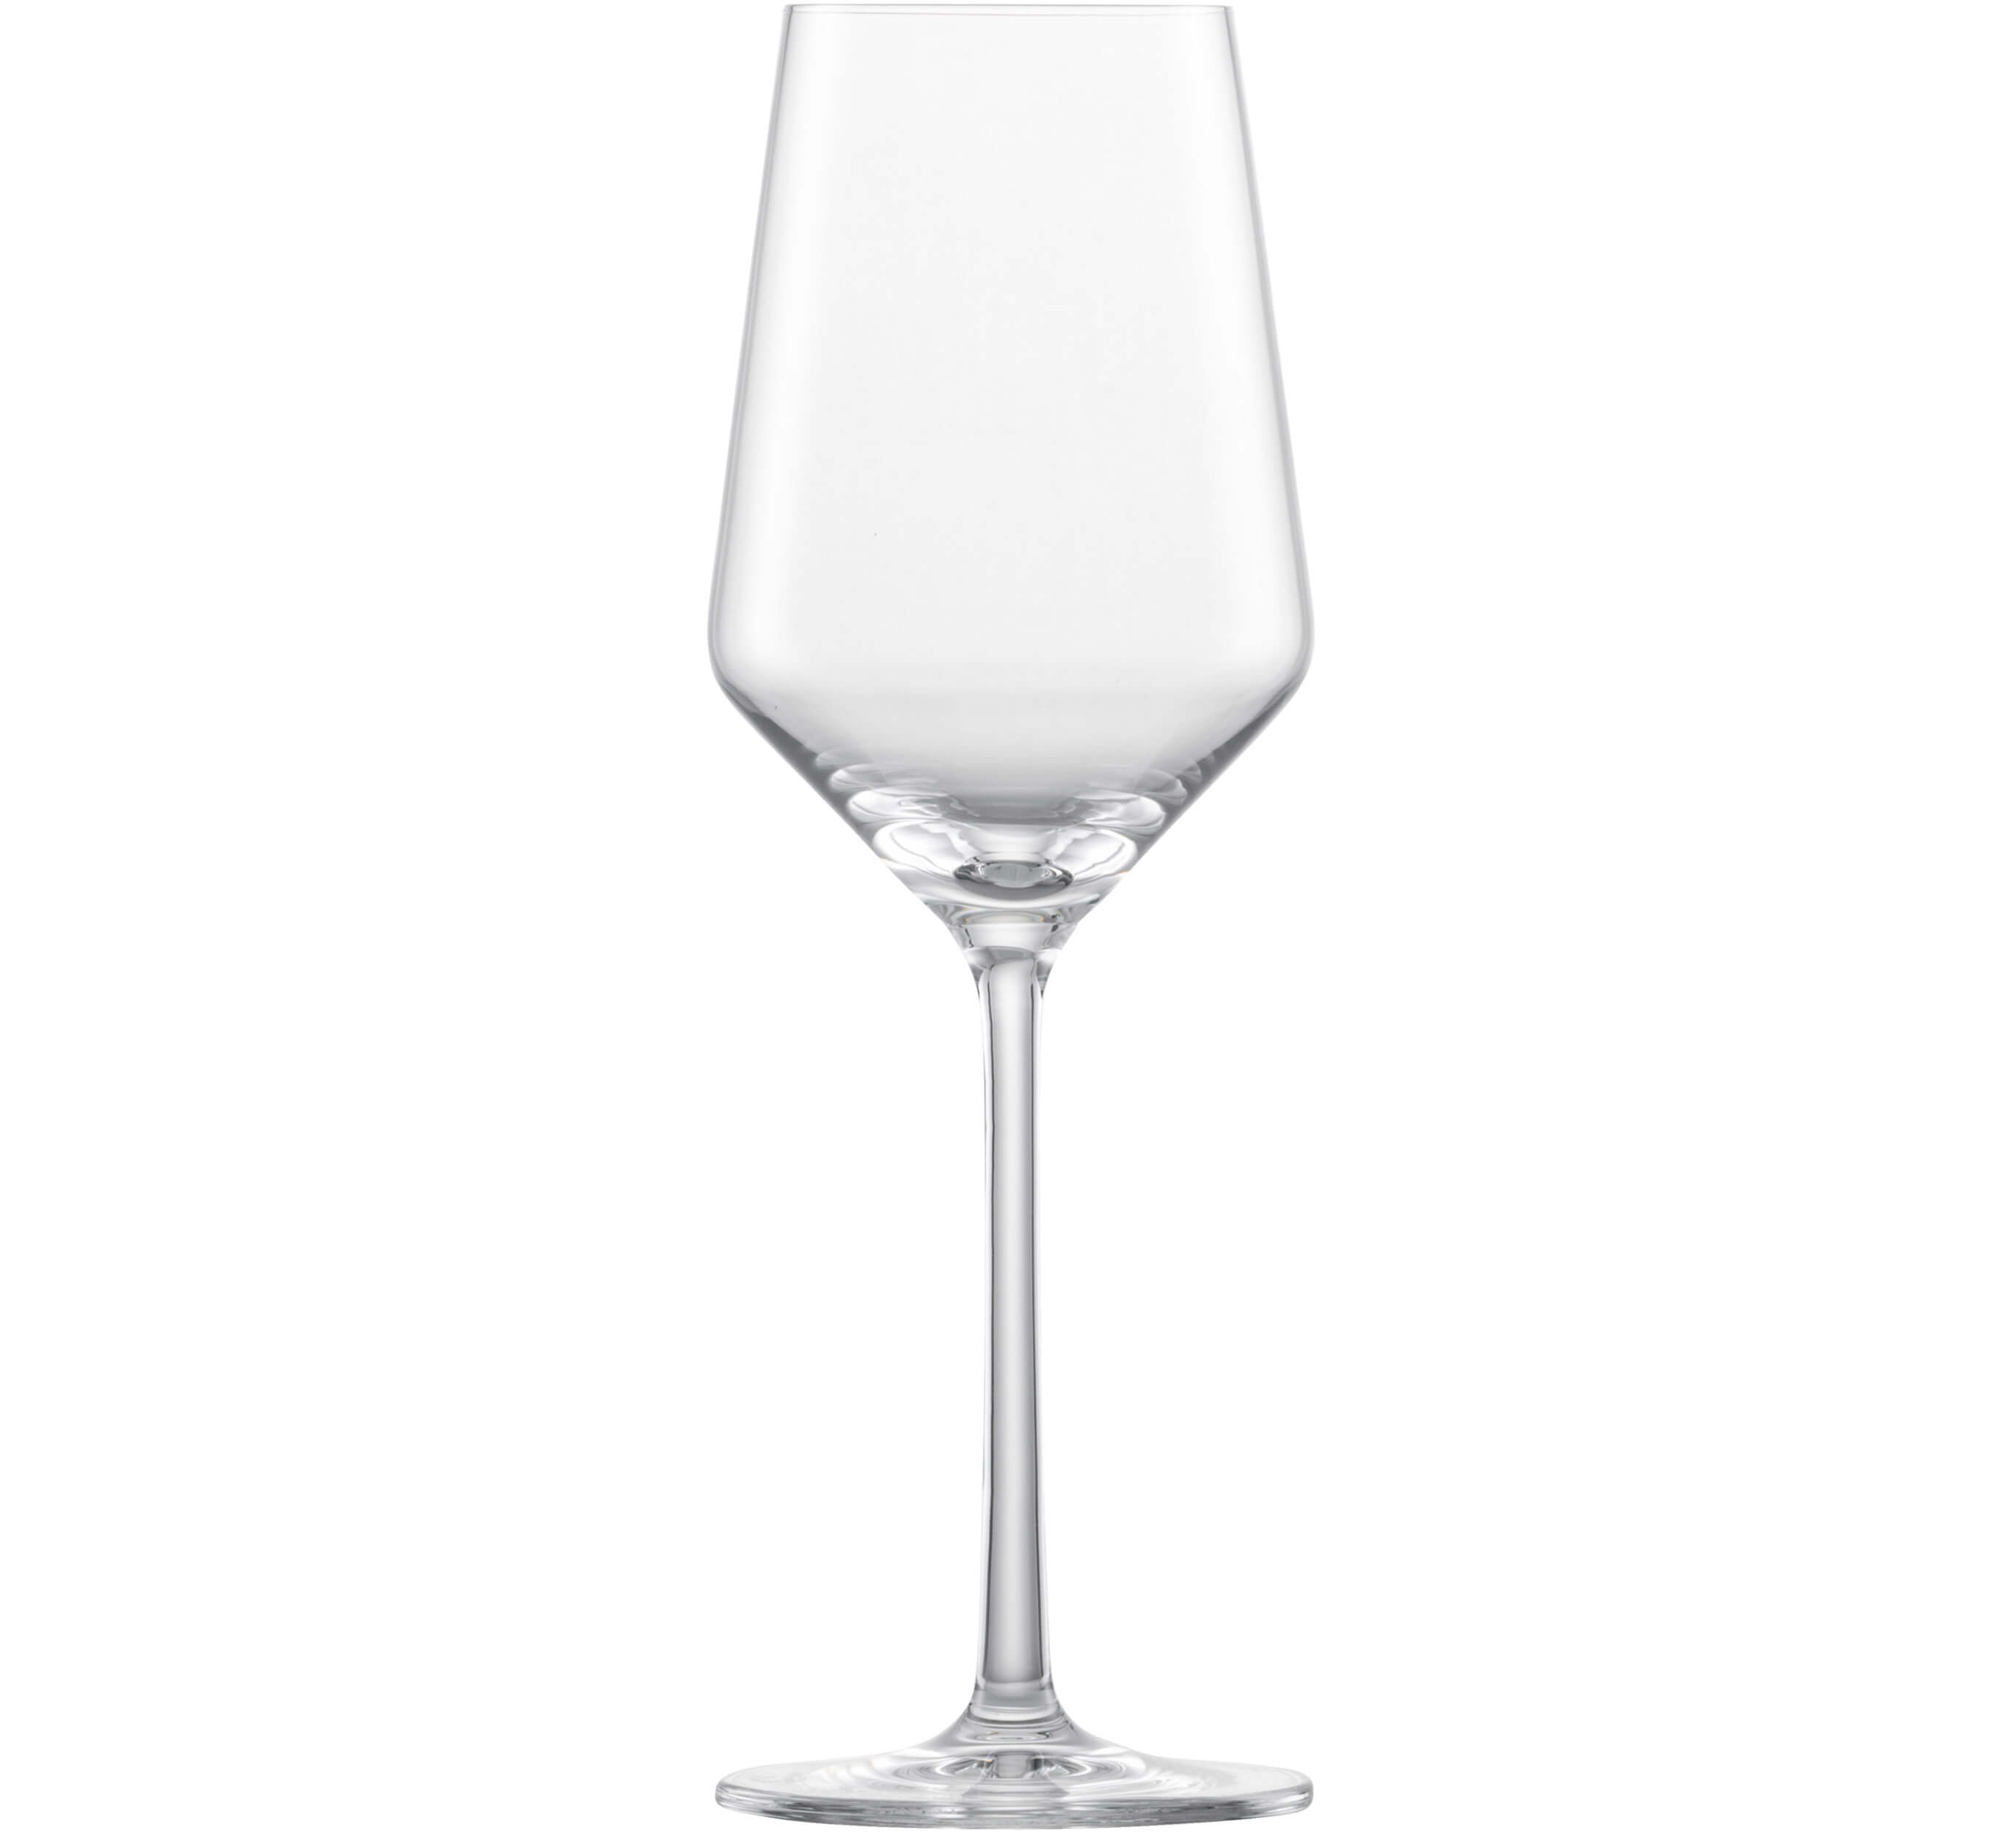 Weißweinglas Riesling, Belfesta Zwiesel Glas - 300ml, 0,15l Eiche (1 Stk.)